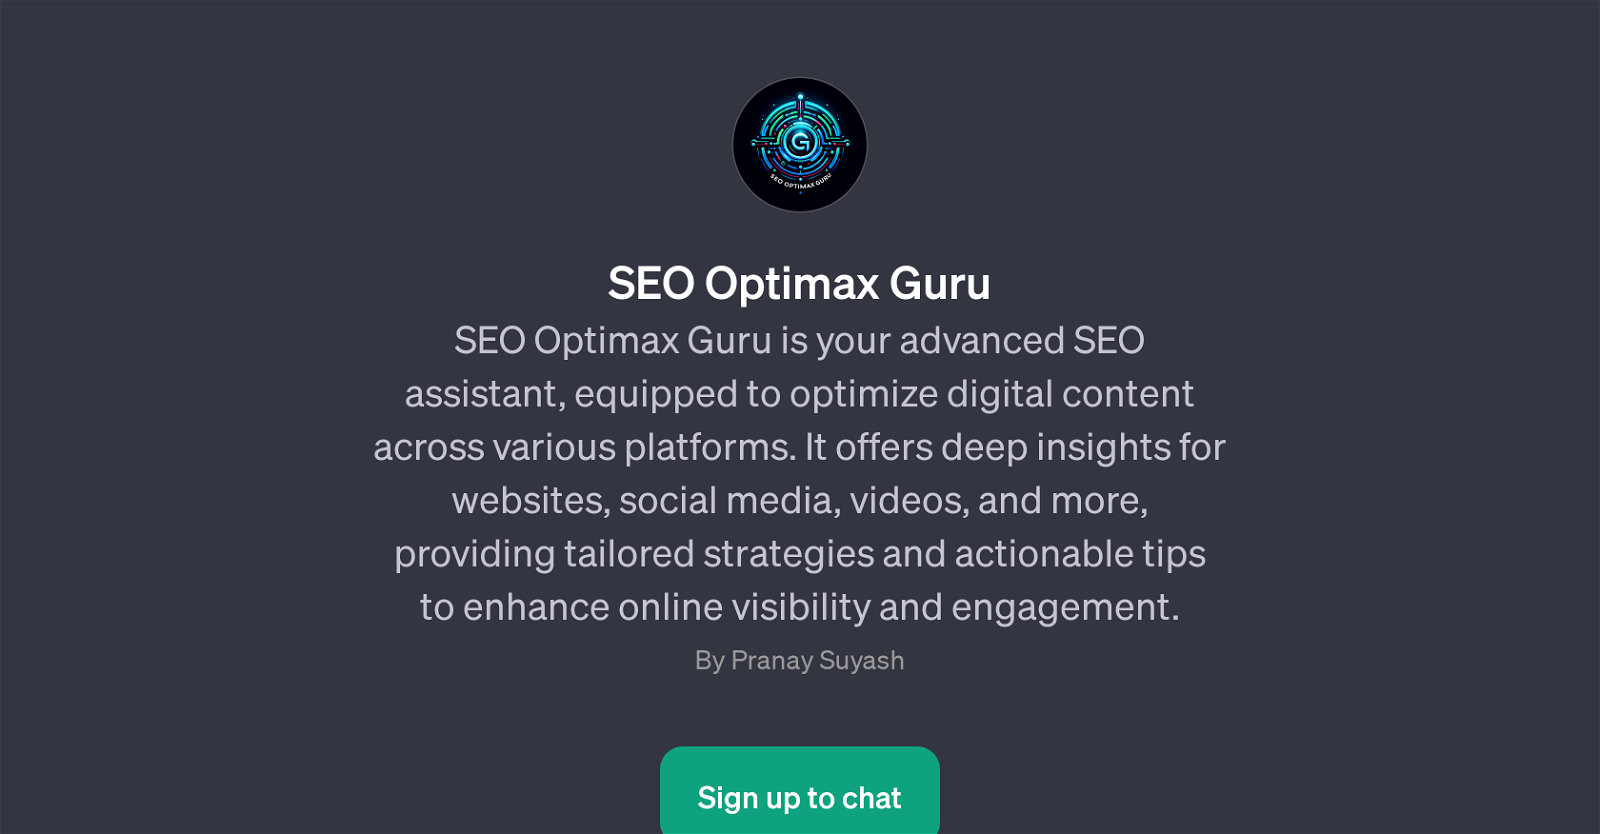 SEO Optimax Guru website